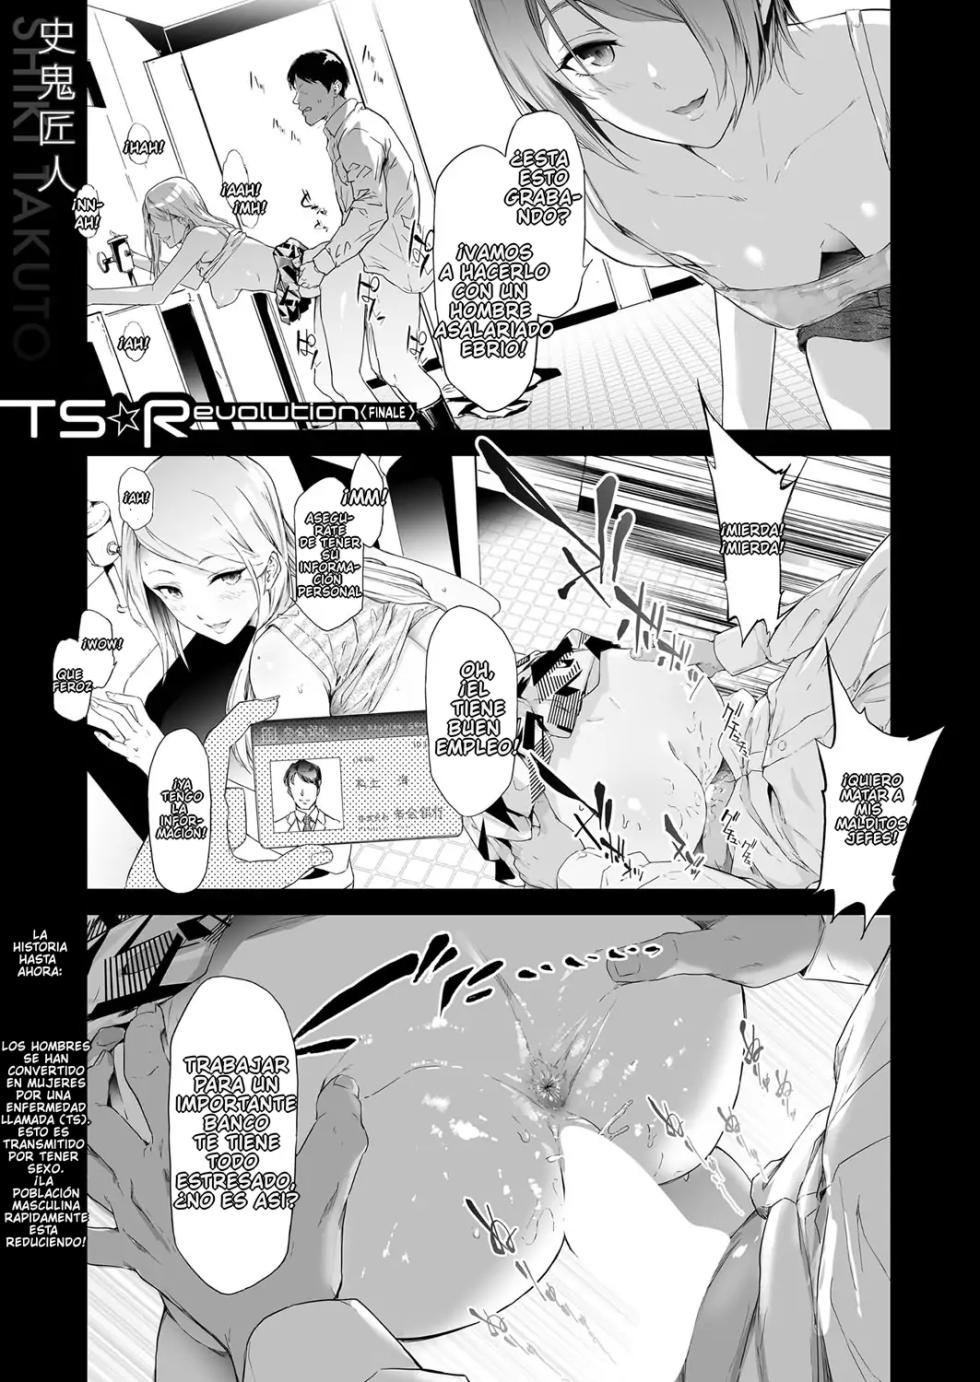 [Shiki Takuto] TS Revolution 5 [Spanish] - Page 1